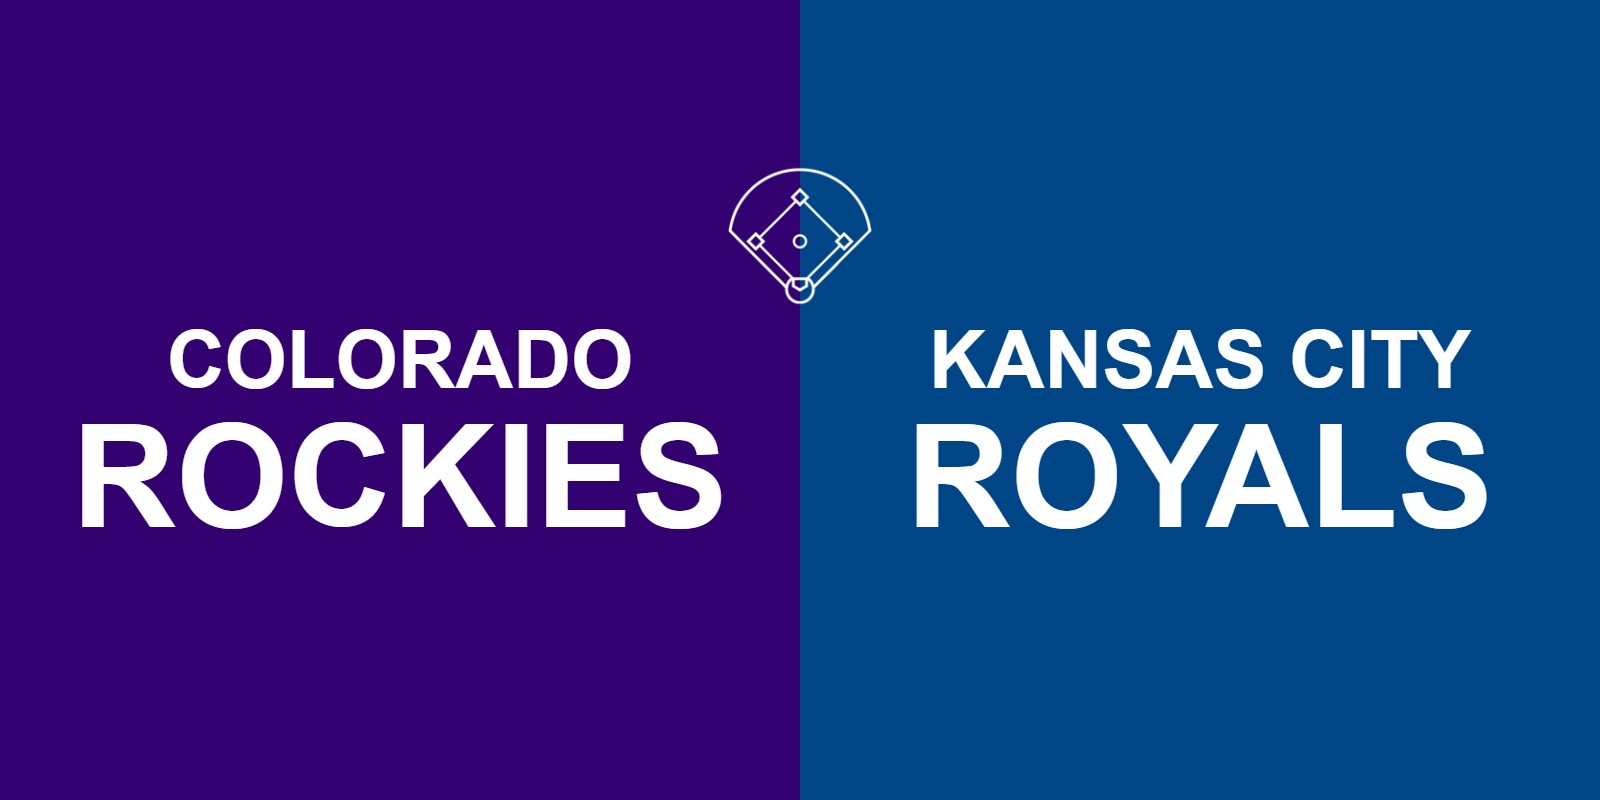 Rockies vs Royals